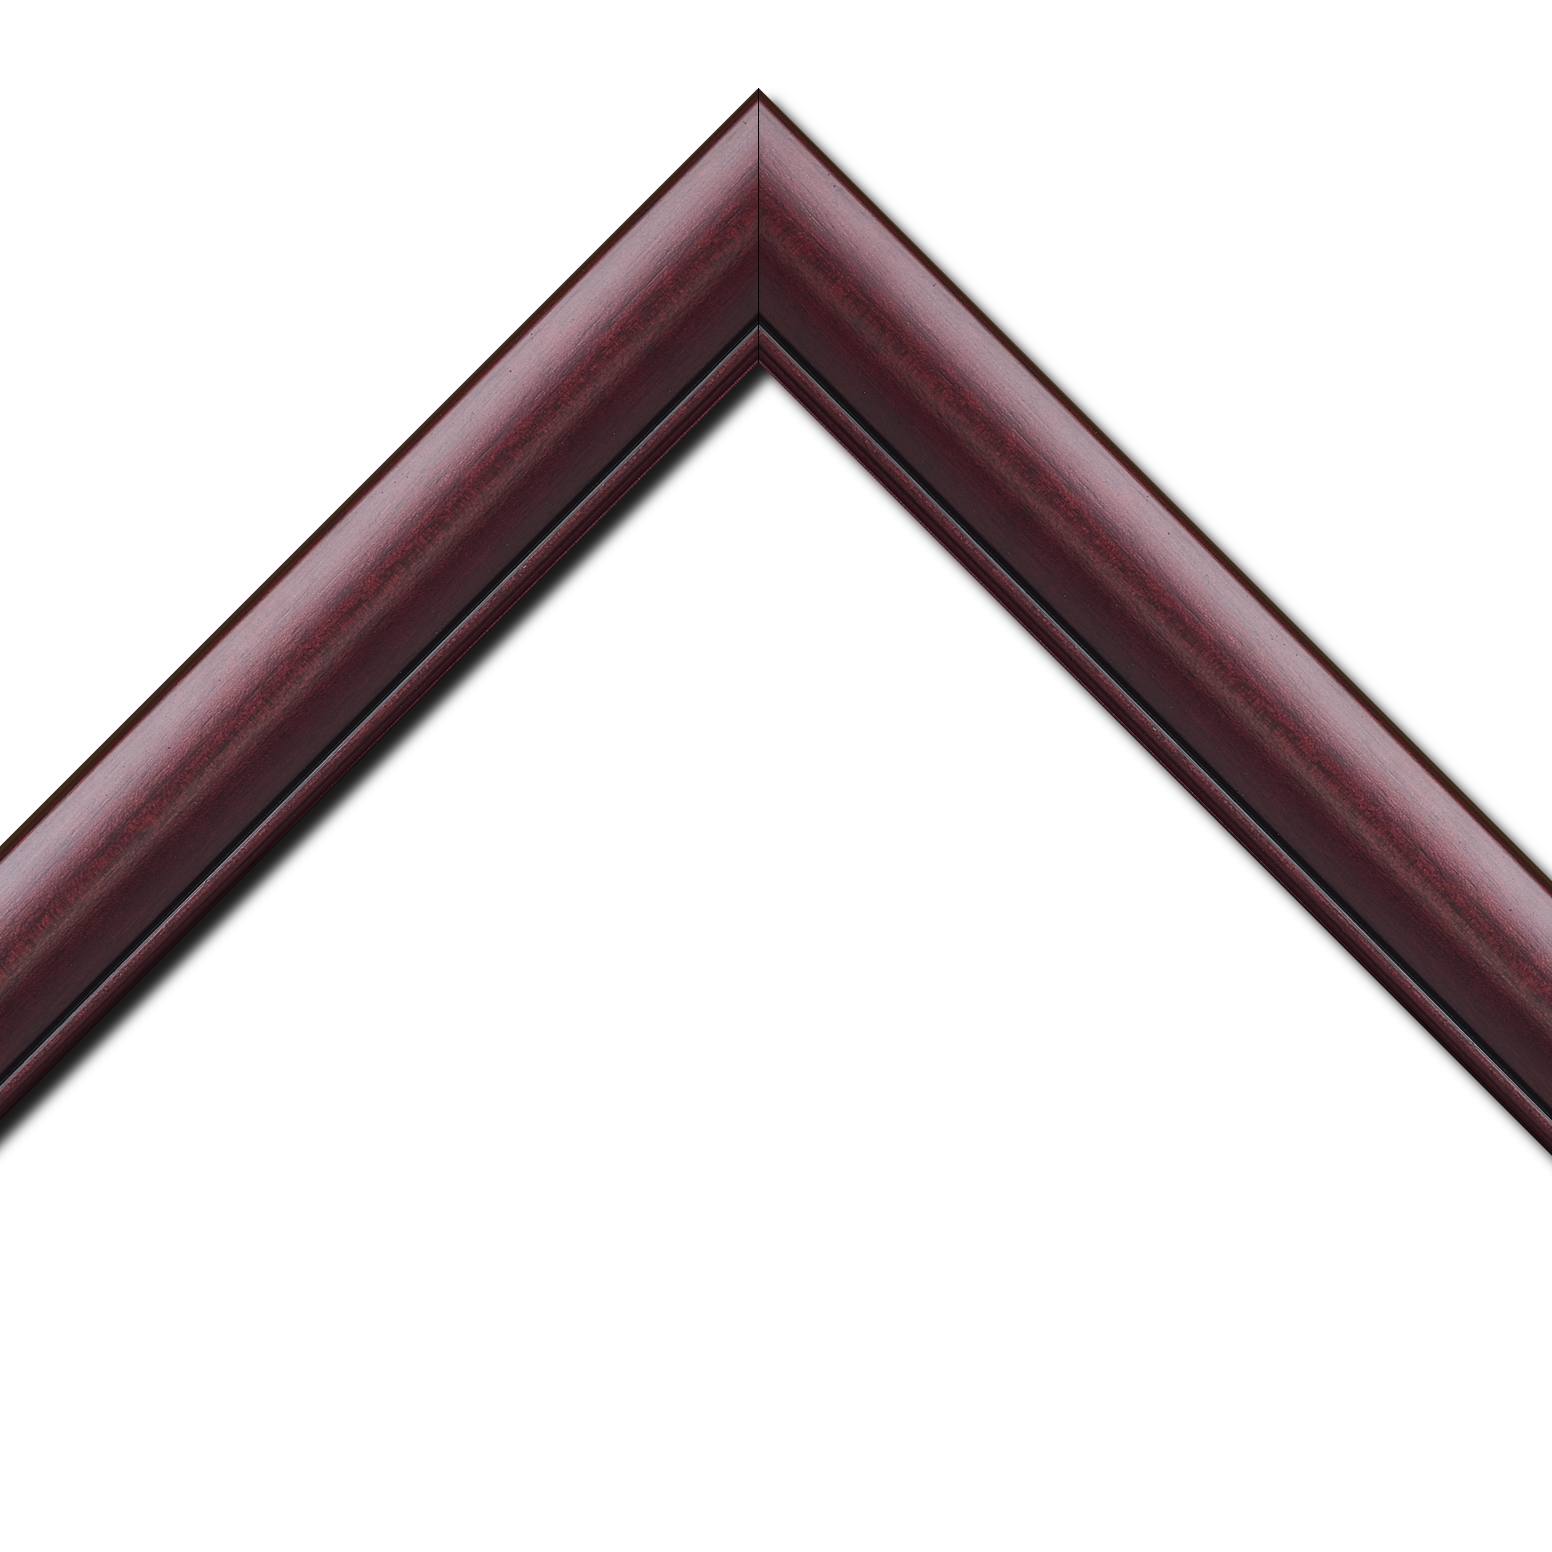 Baguette bois profil arrondi largeur 4.7cm couleur bordeaux lie de vin satiné rehaussé d'un filet noir